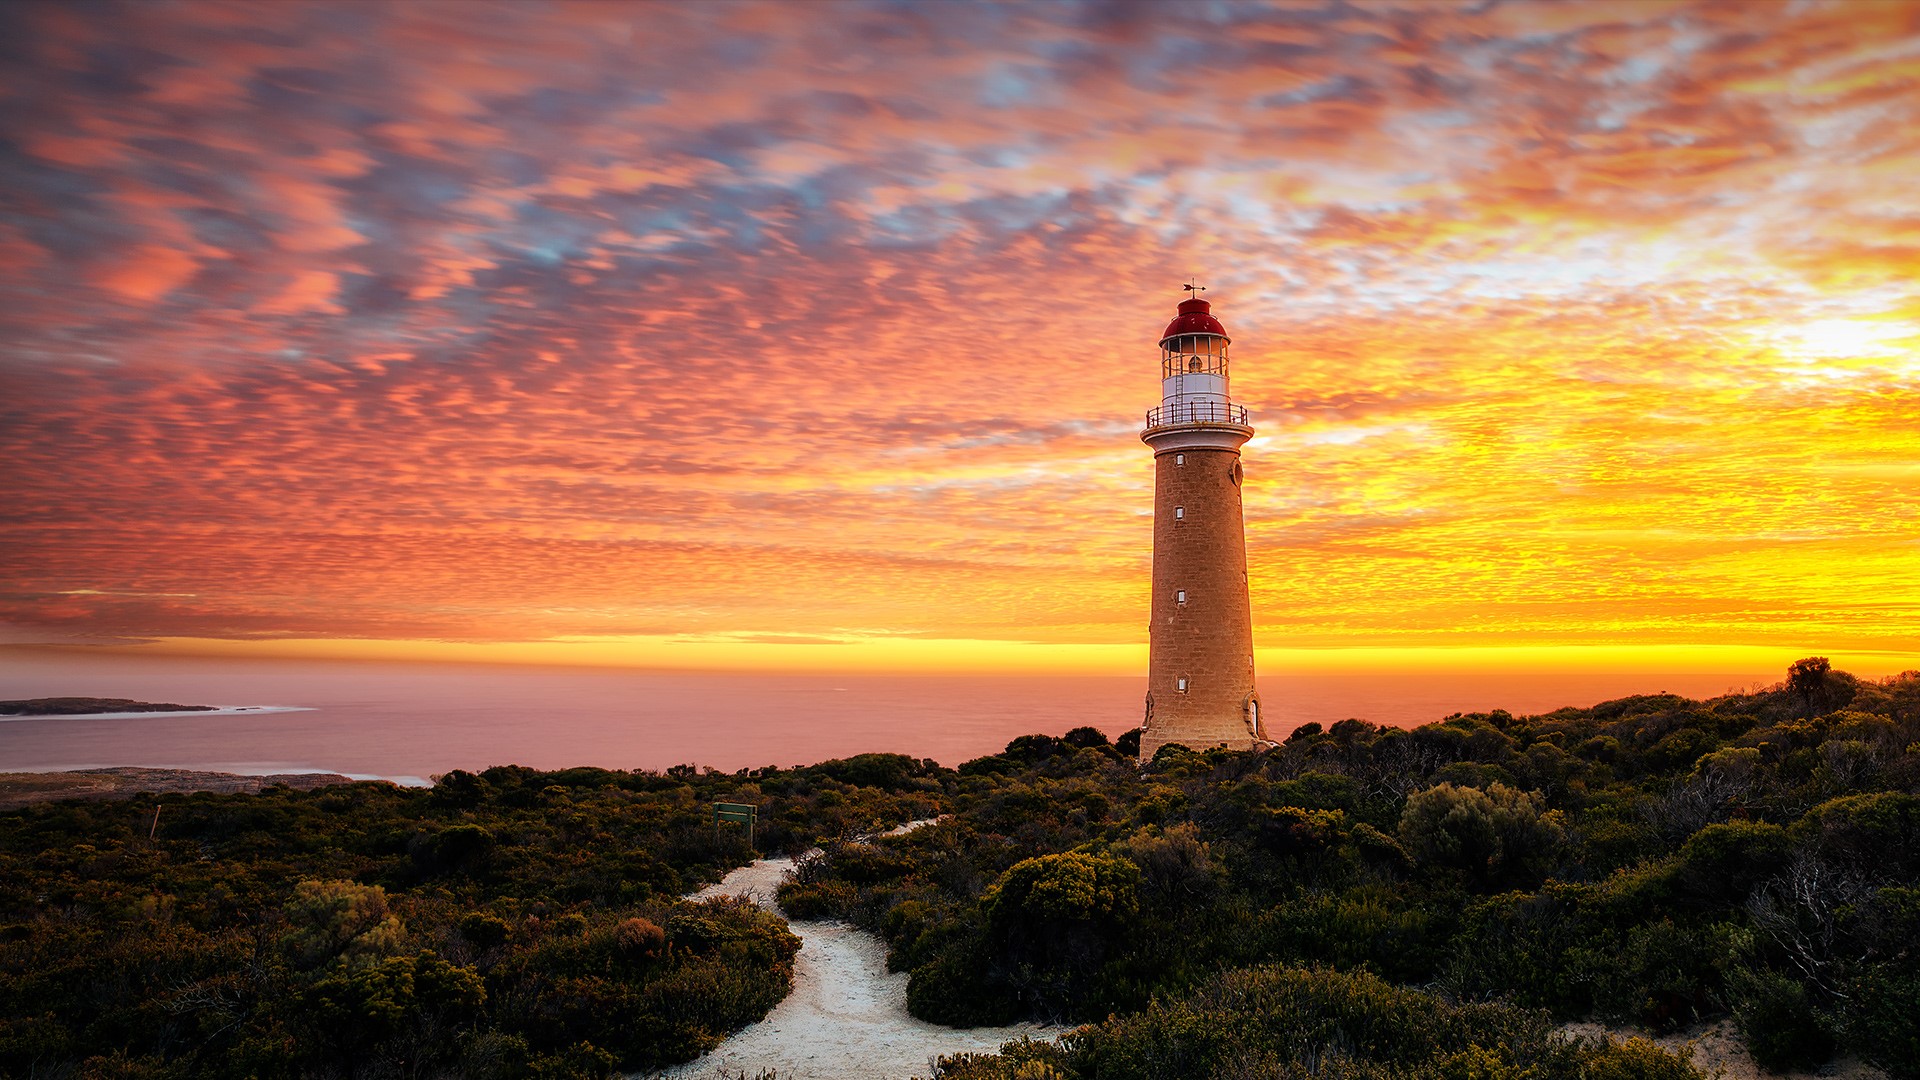 General 1920x1080 nature landscape clouds sky sunset lighthouse sea horizon long exposure plants The Cape du Couedic Lighthouse Australia